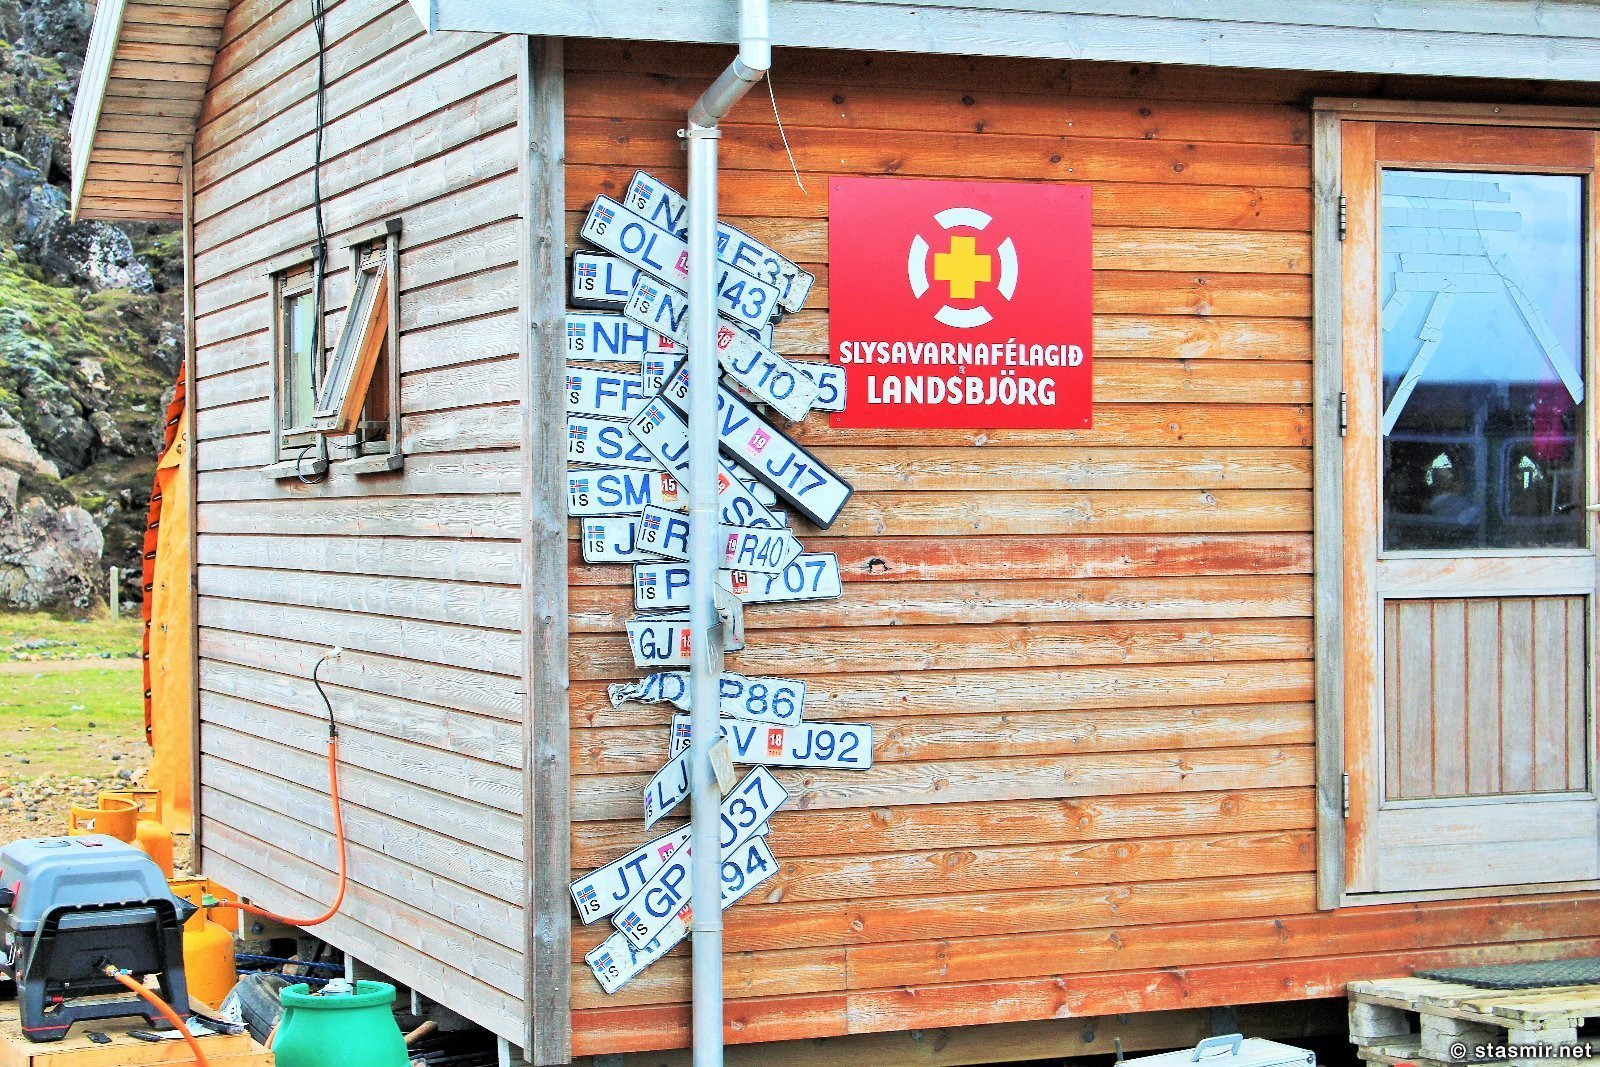 Потерянные номерные знаки в Ландманналёйгар, долина Ландманналёйгар, Ландманналаугар, Landmannalaugar, Icelandic road signs, фото Стасмир, Photo Stasmir